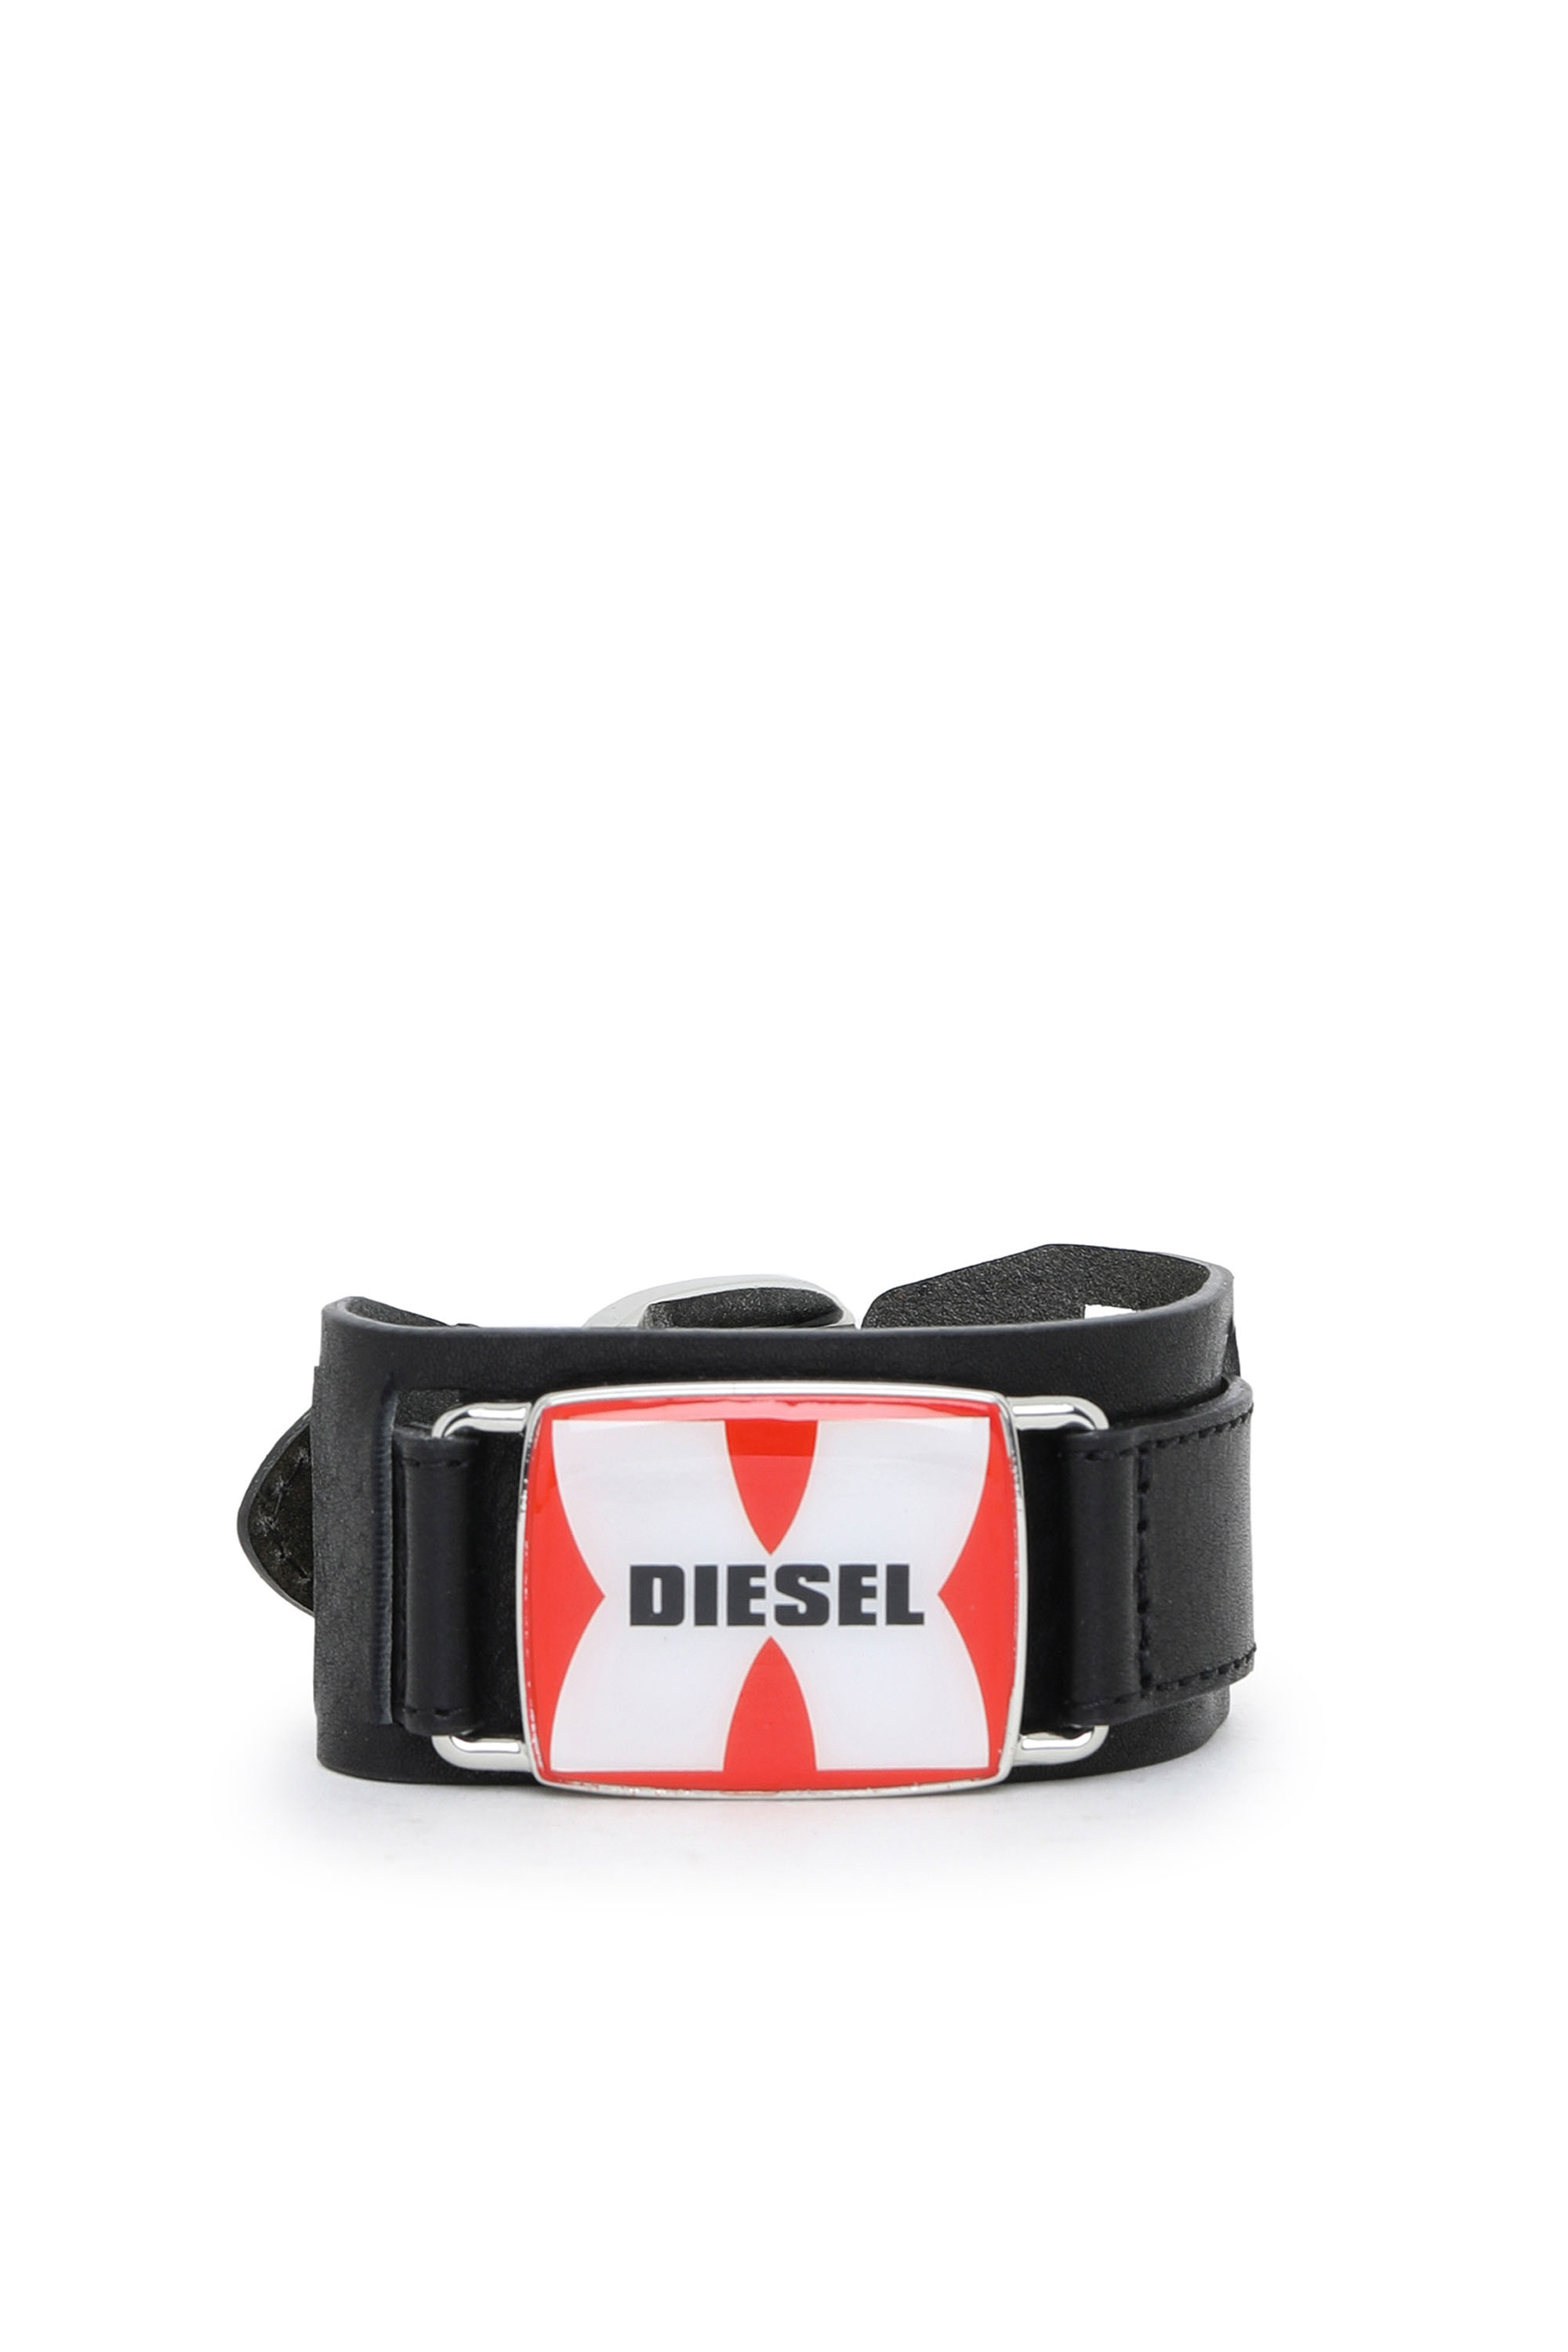 Diesel - A-PLAQUE, Black - Image 1